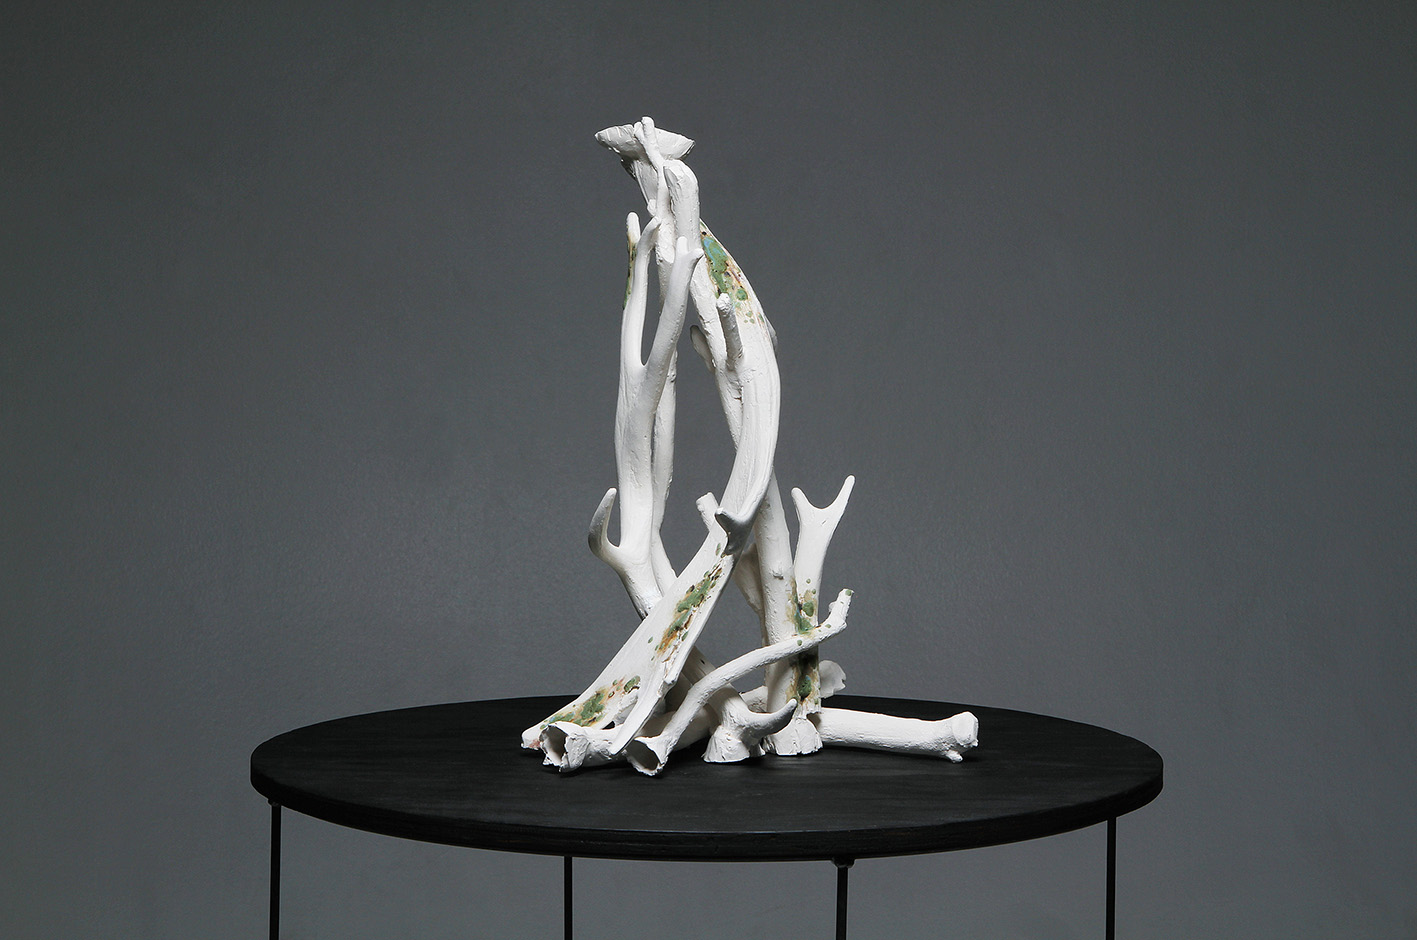 slip cast porcelain project ephemeral death decay regeneration remains bones antlers branches lauren downton contemporary artist